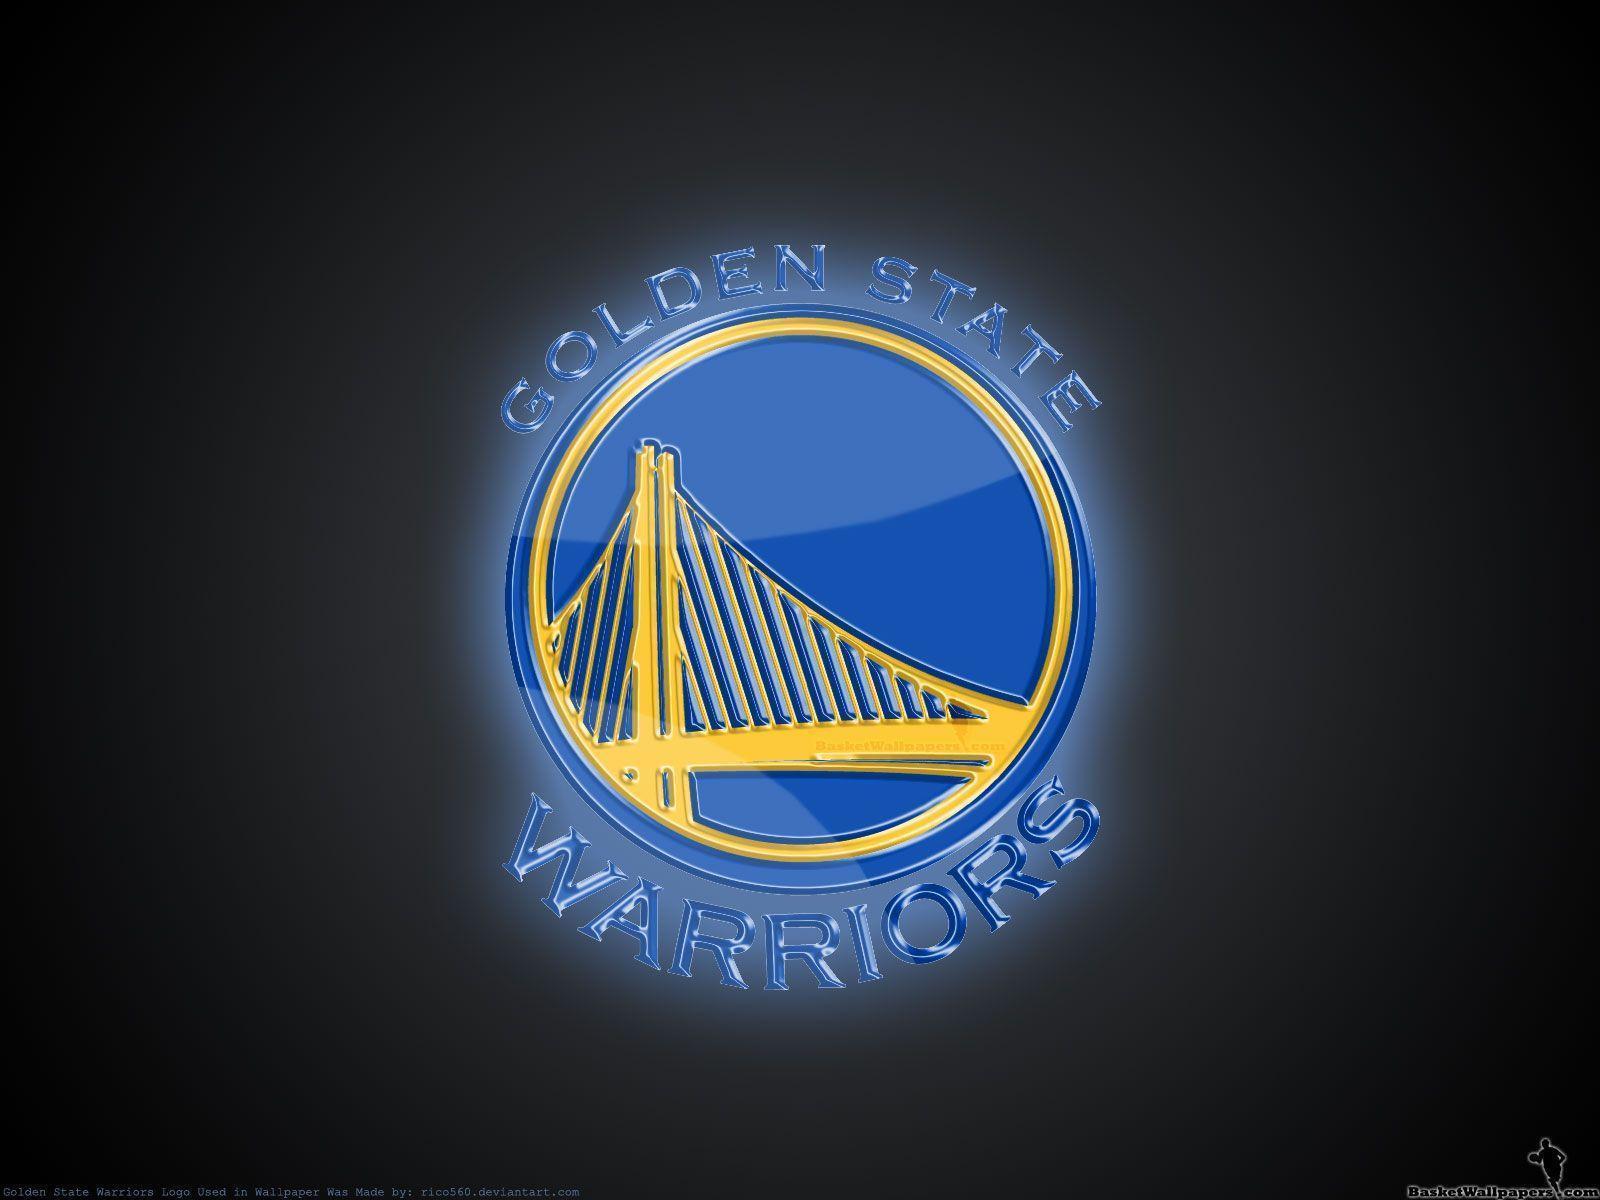 Golden State Warriors 3D Logo Wallpaper. Basketball Wallpaper at